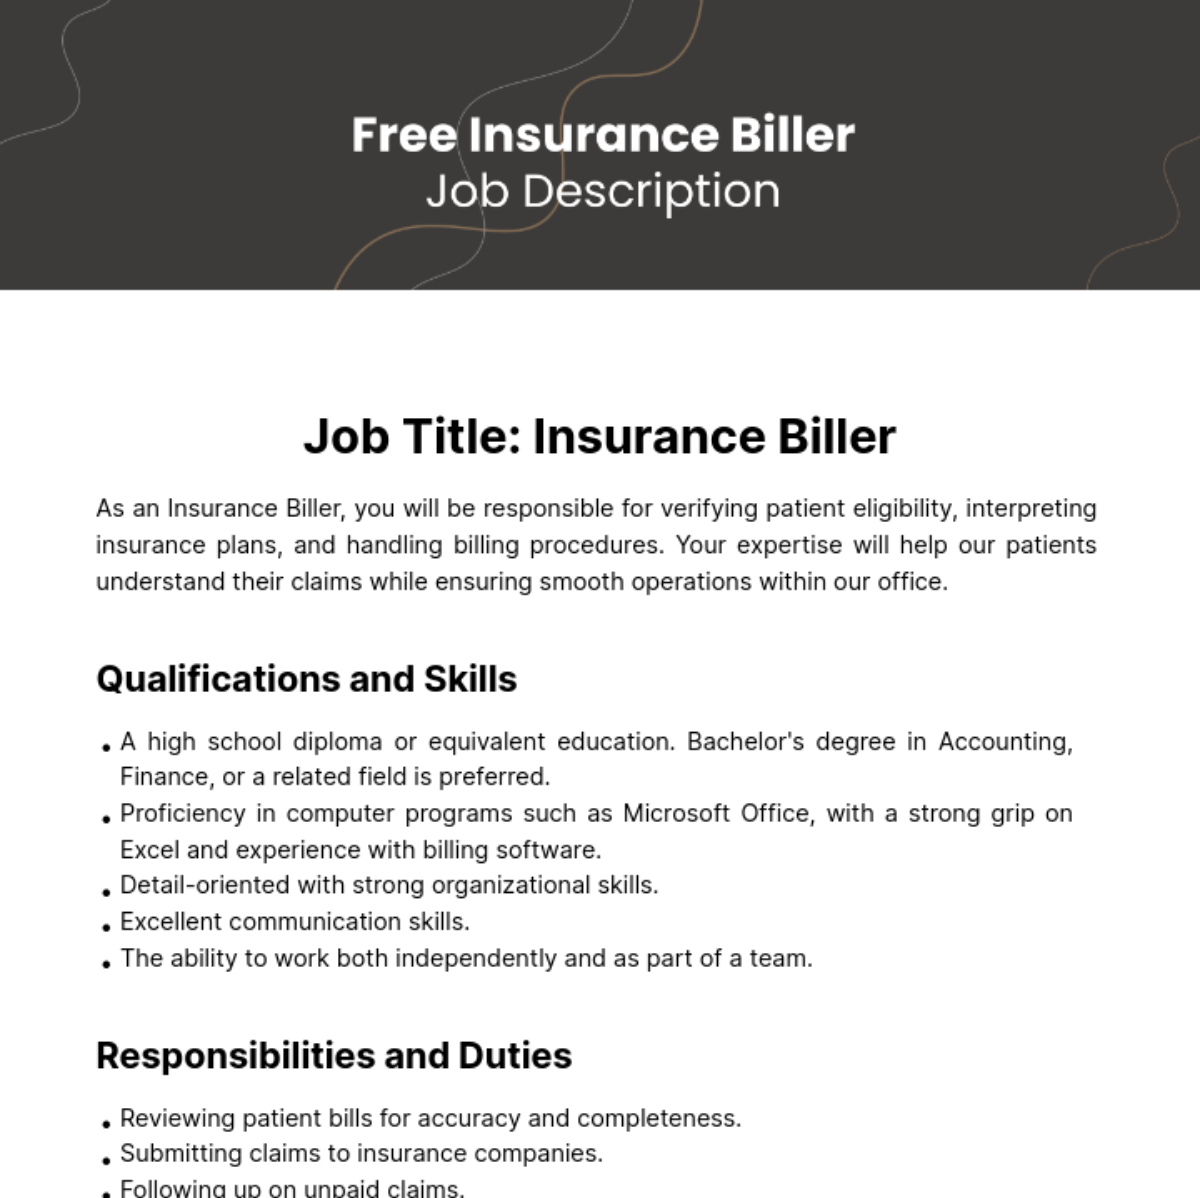 Insurance Biller Job Description Template